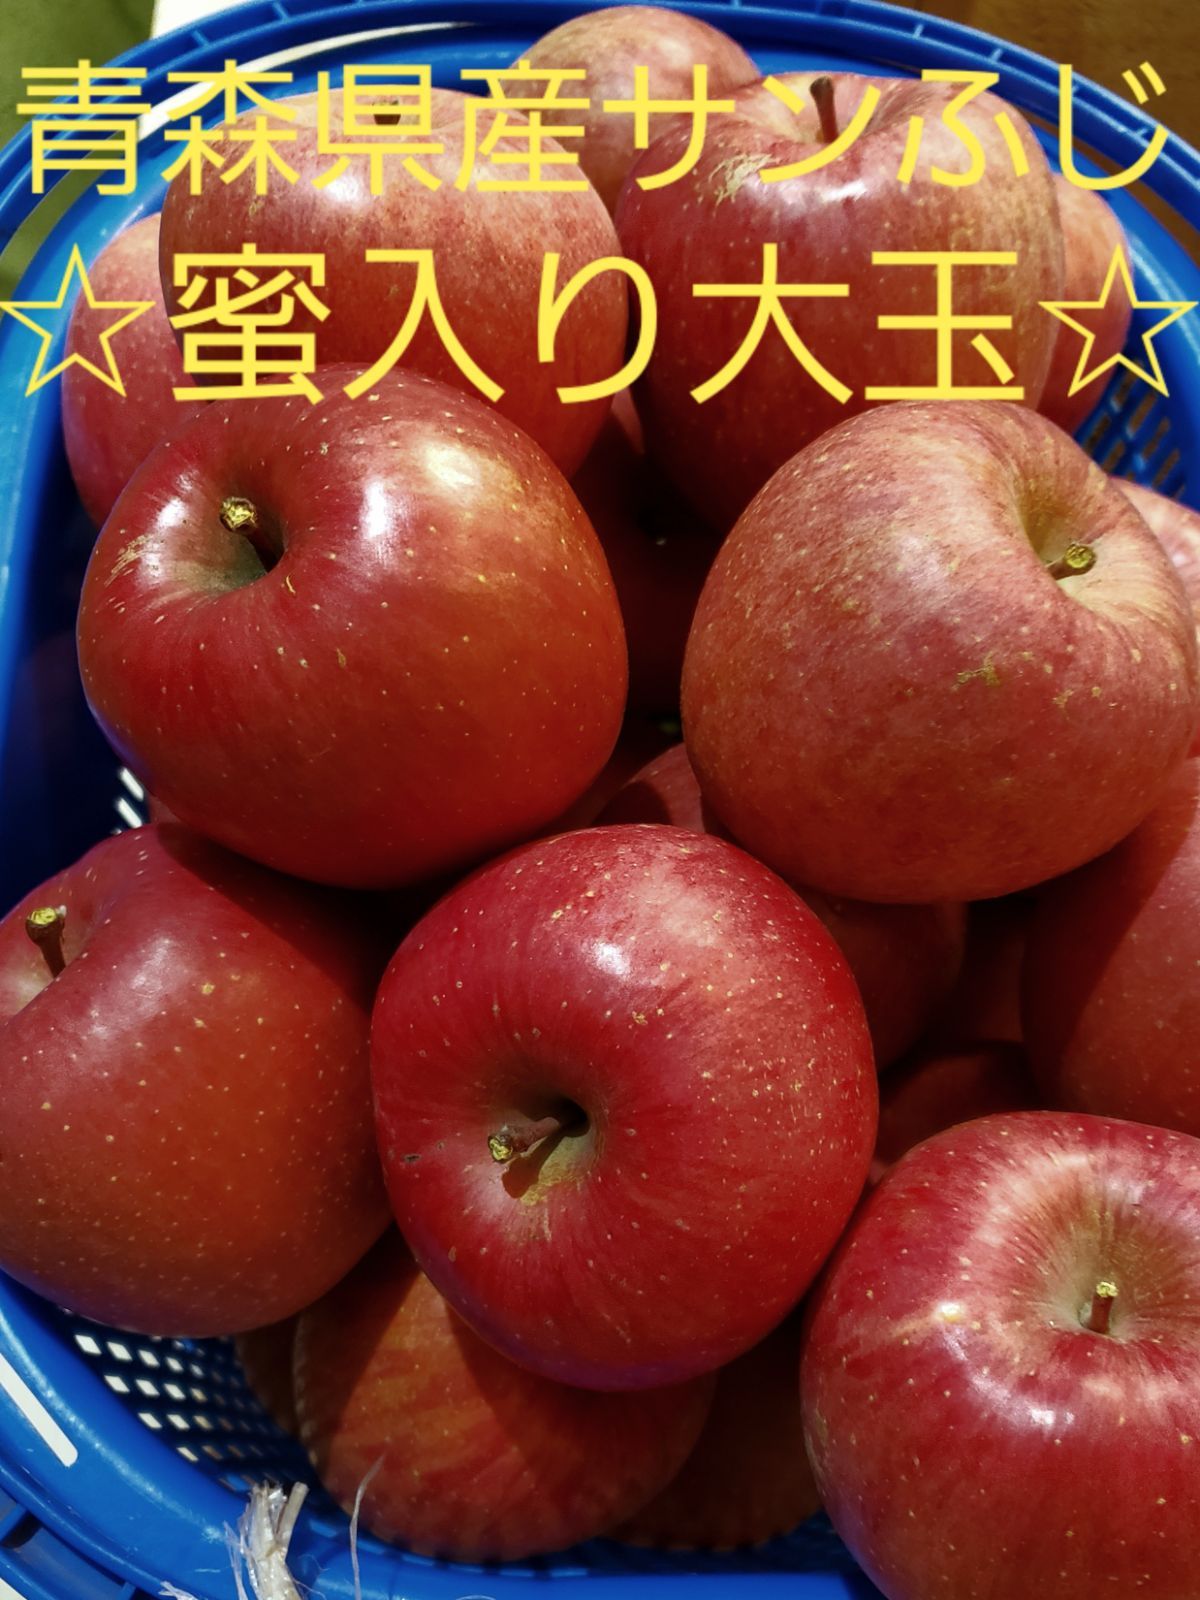 ☆期間限定☆青森県産 ふじ りんご 家庭用 6~8玉 通販